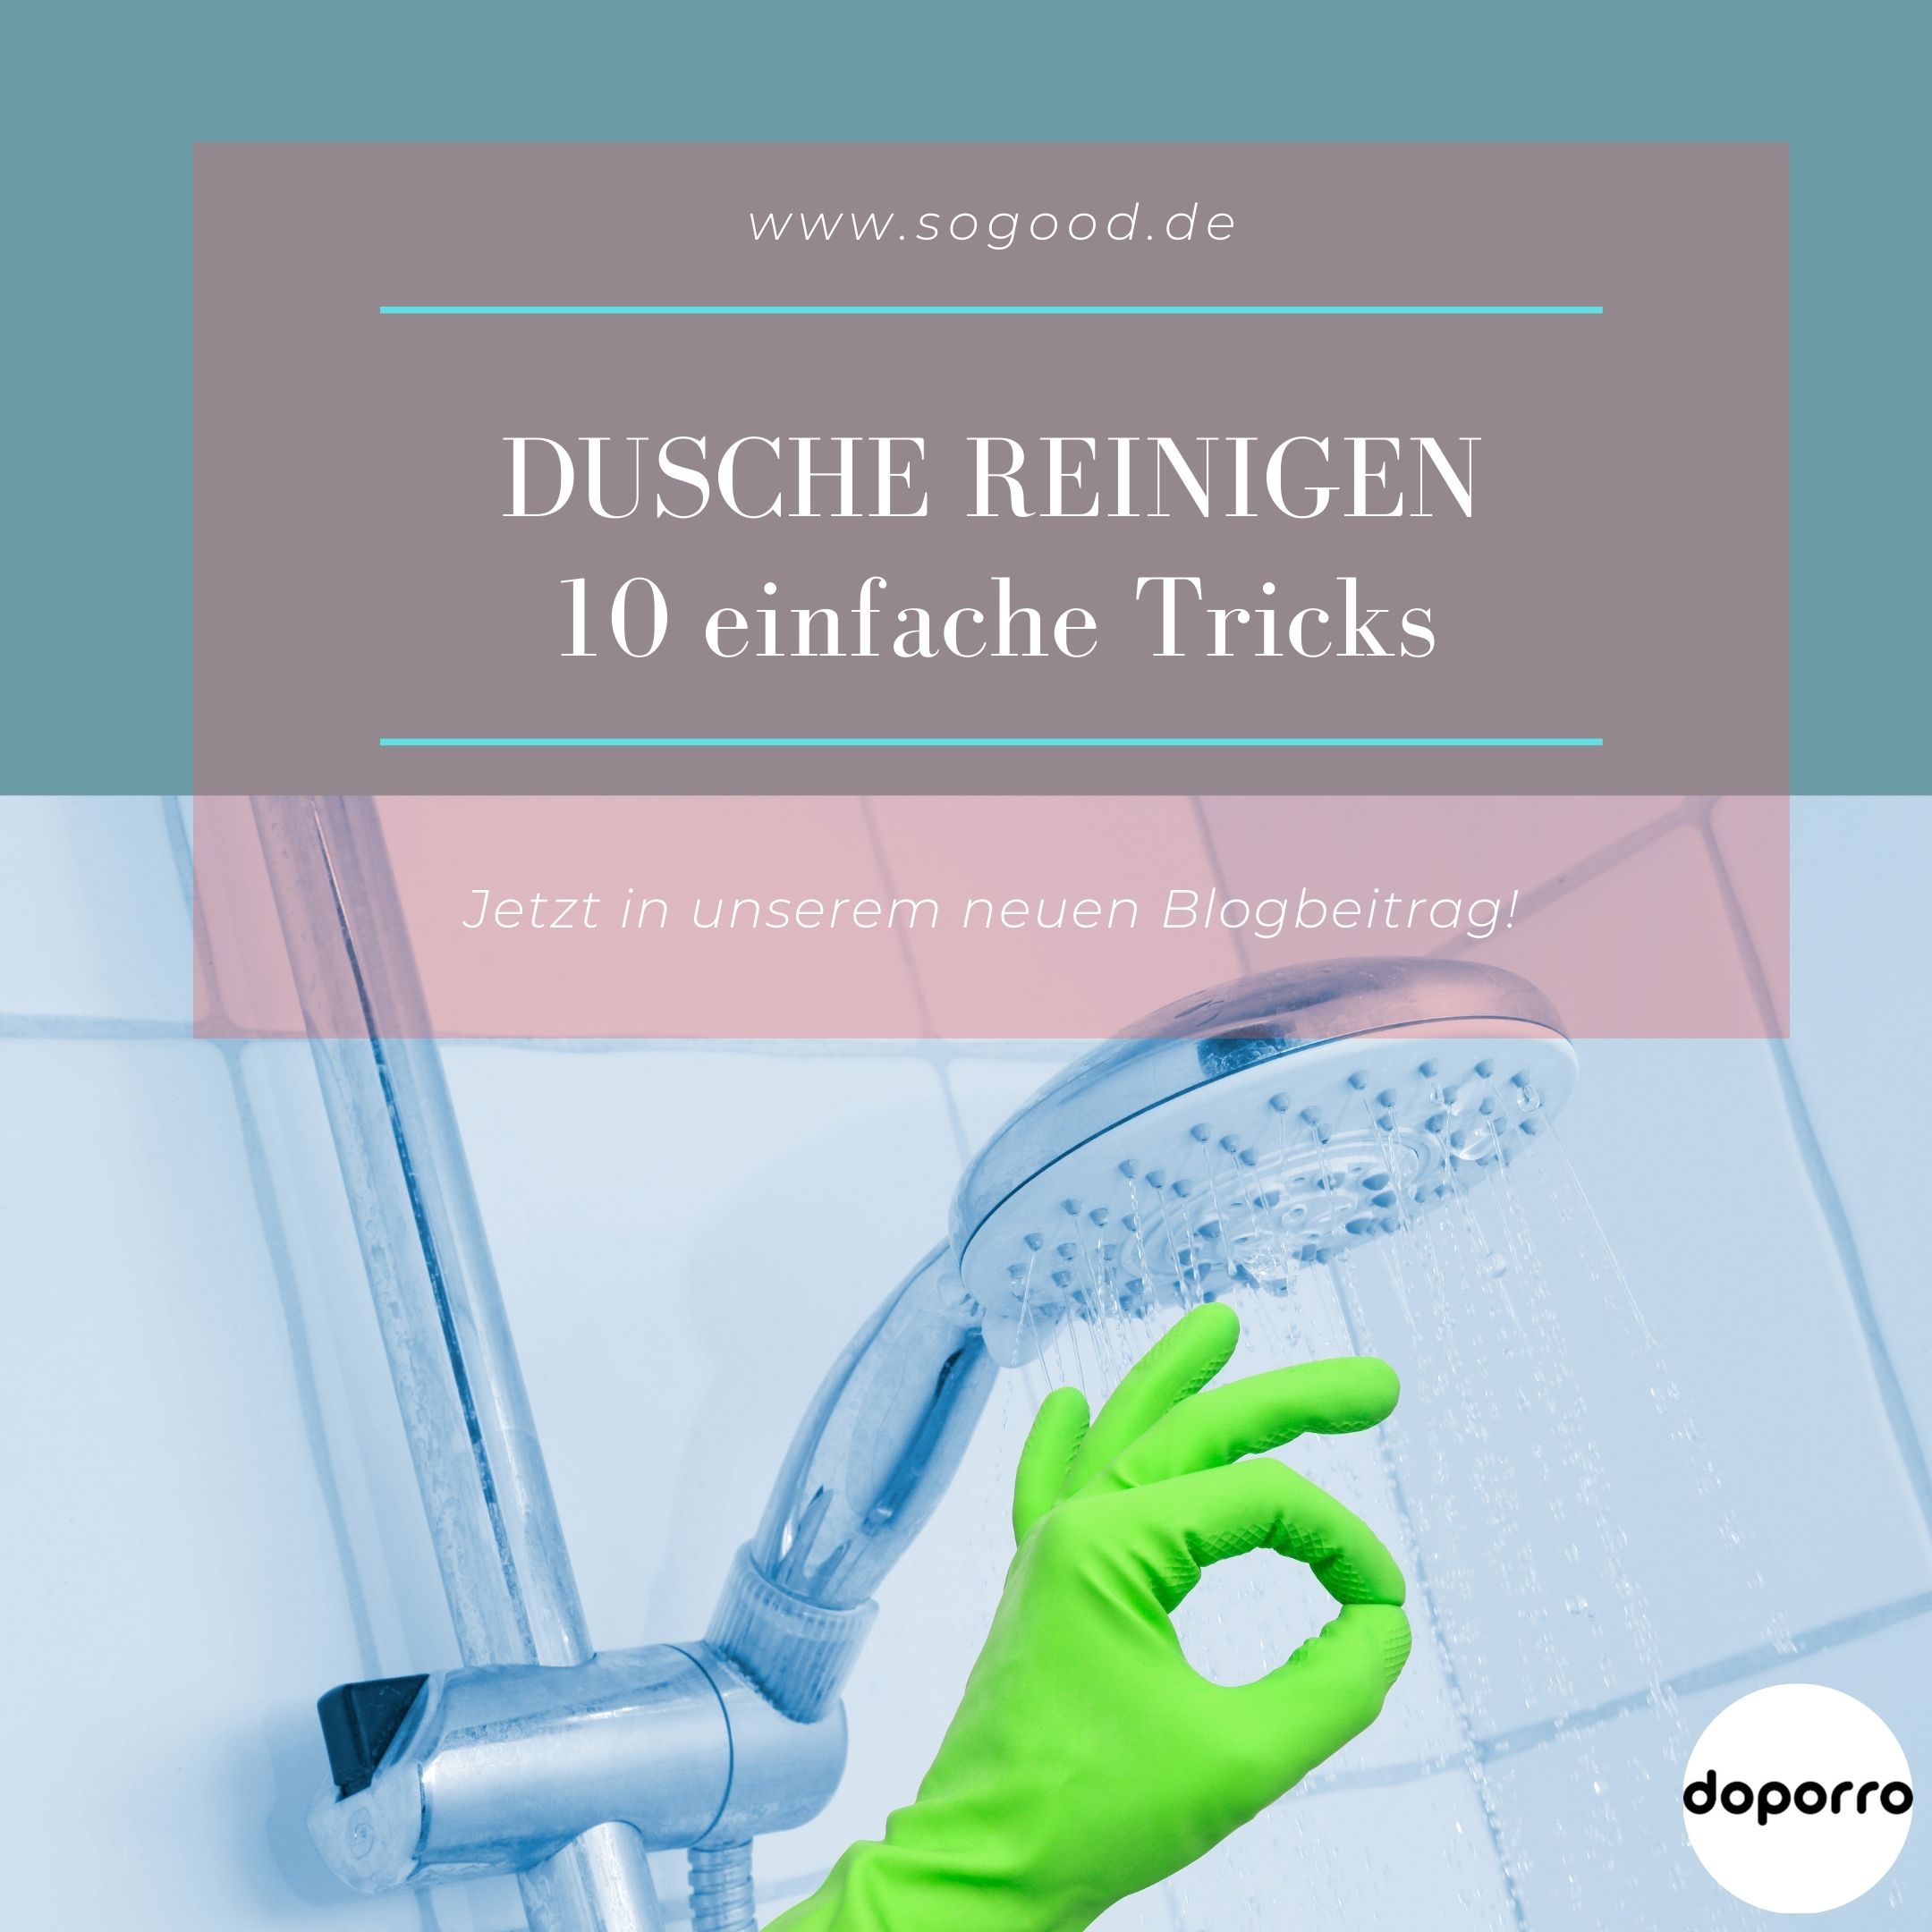 Dusche reinigen - 10 einfache Tricks